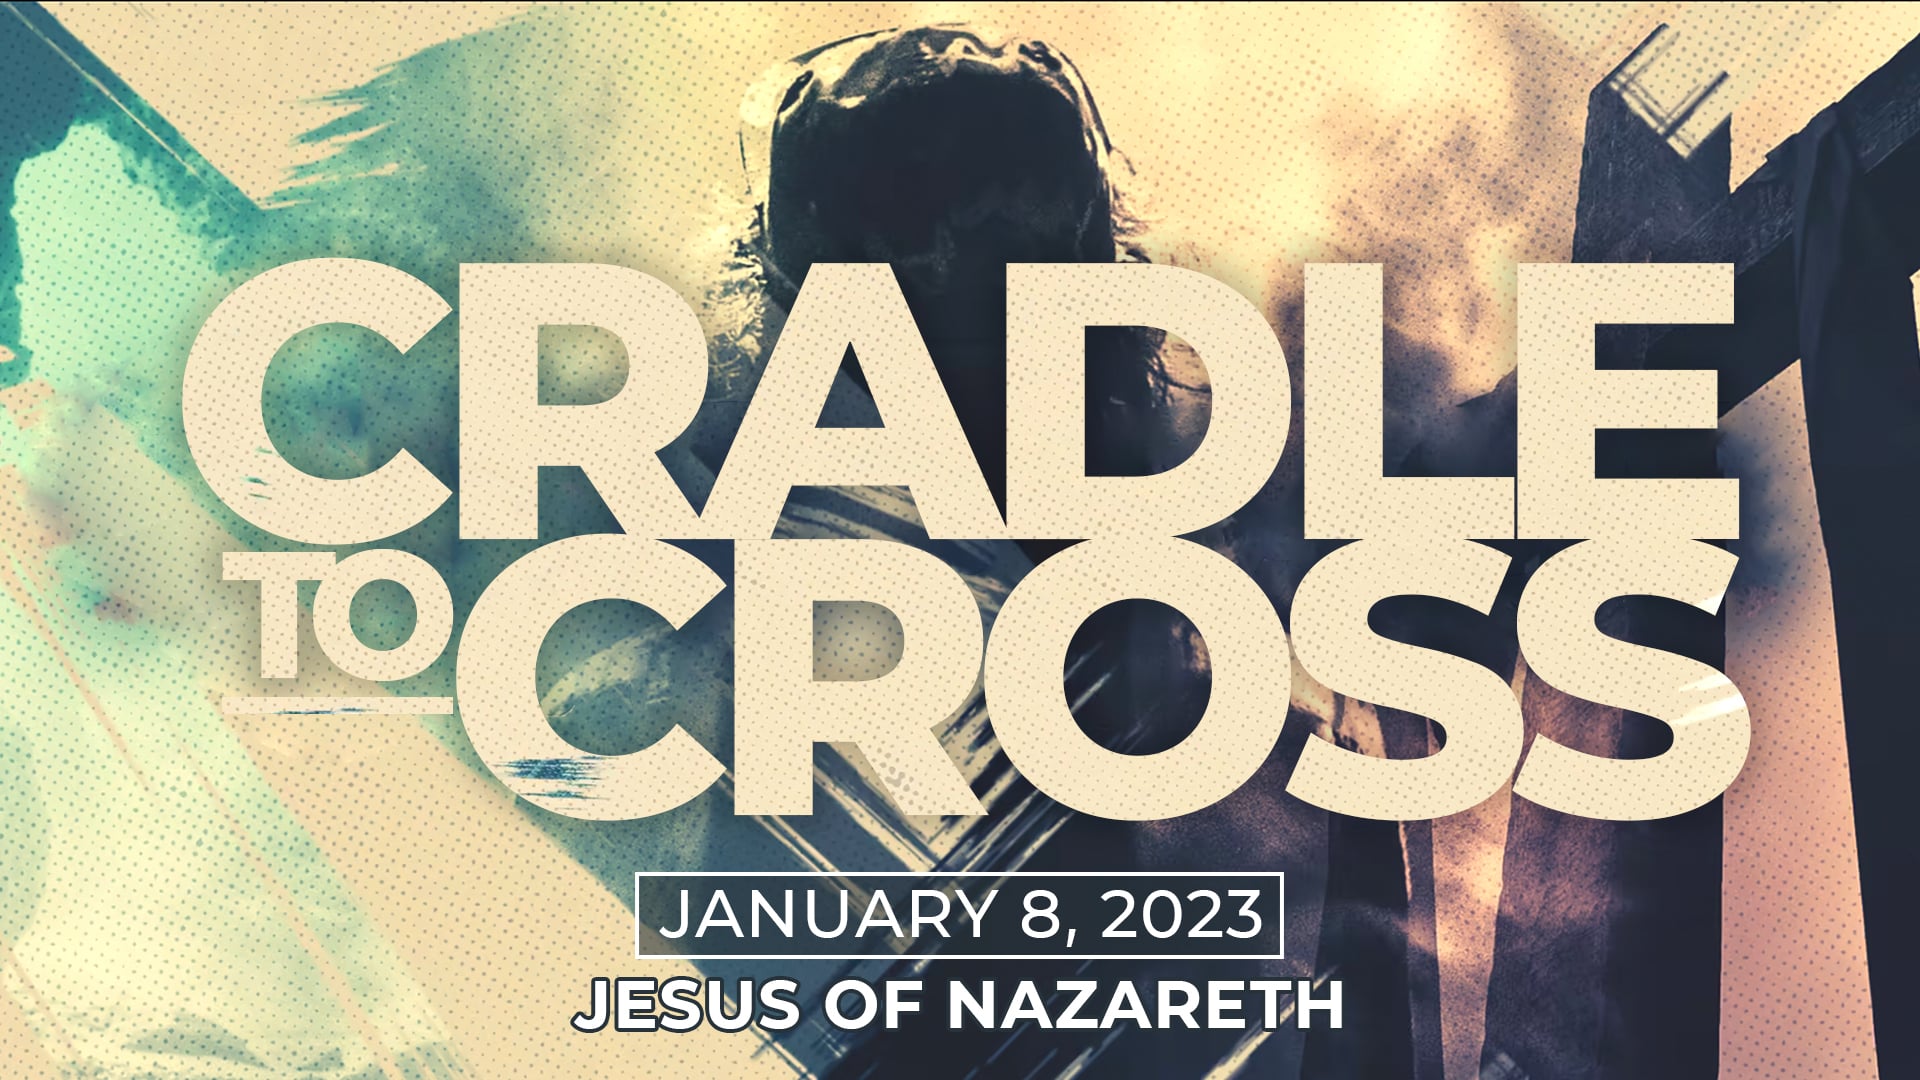 January 8, 2023 - Cradle to Cross: Jesus of Nazareth